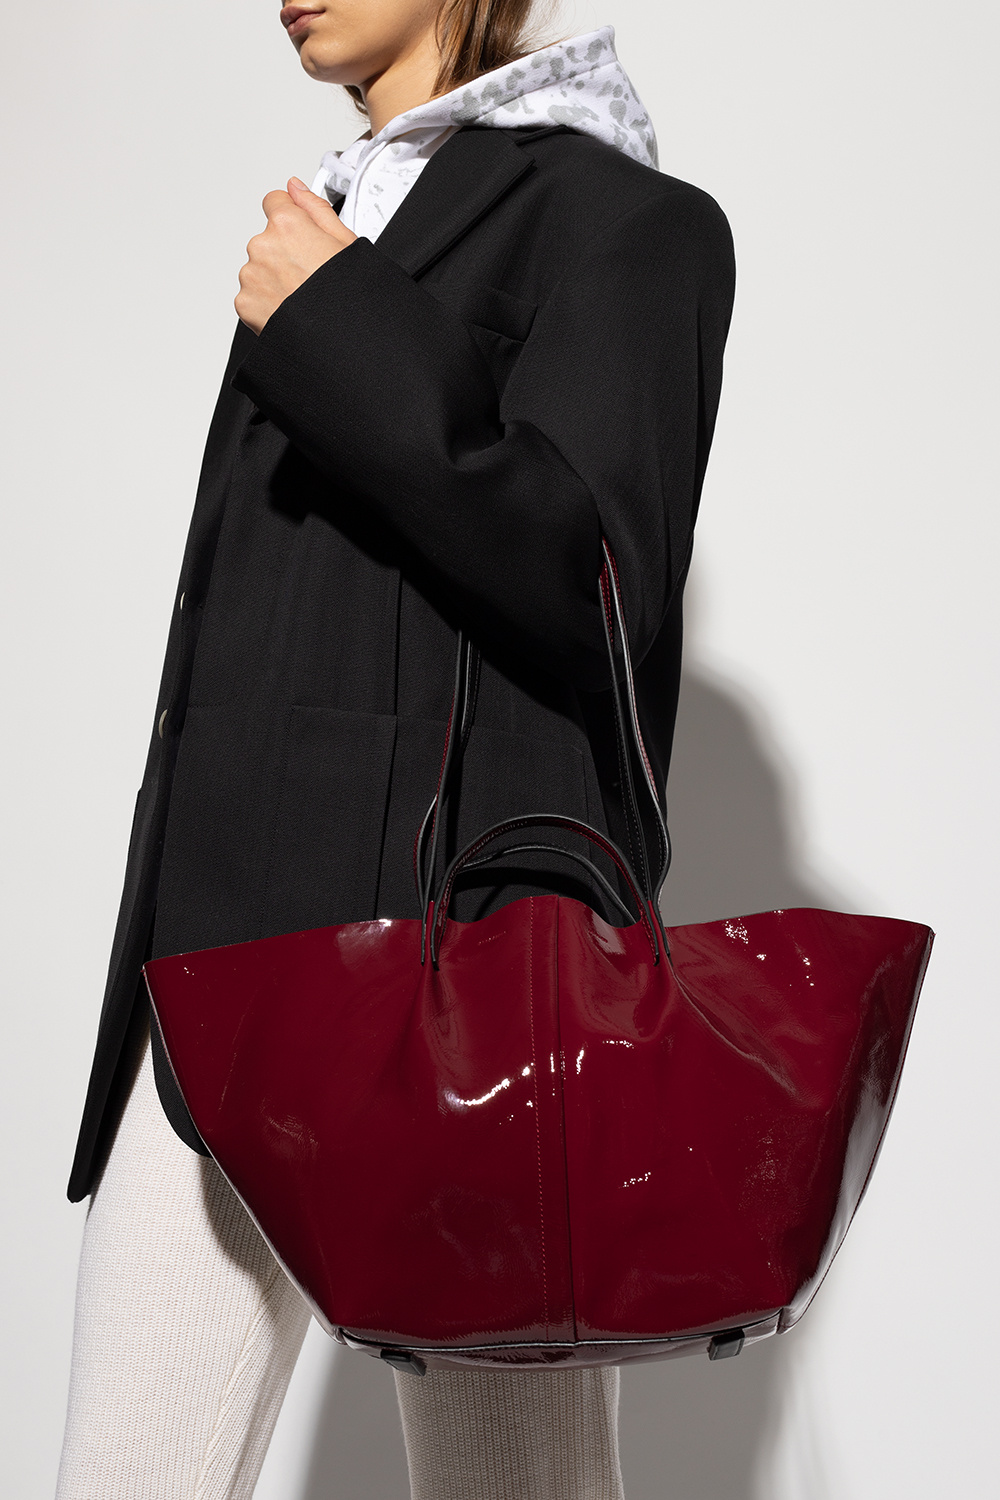 Odette leather handbag